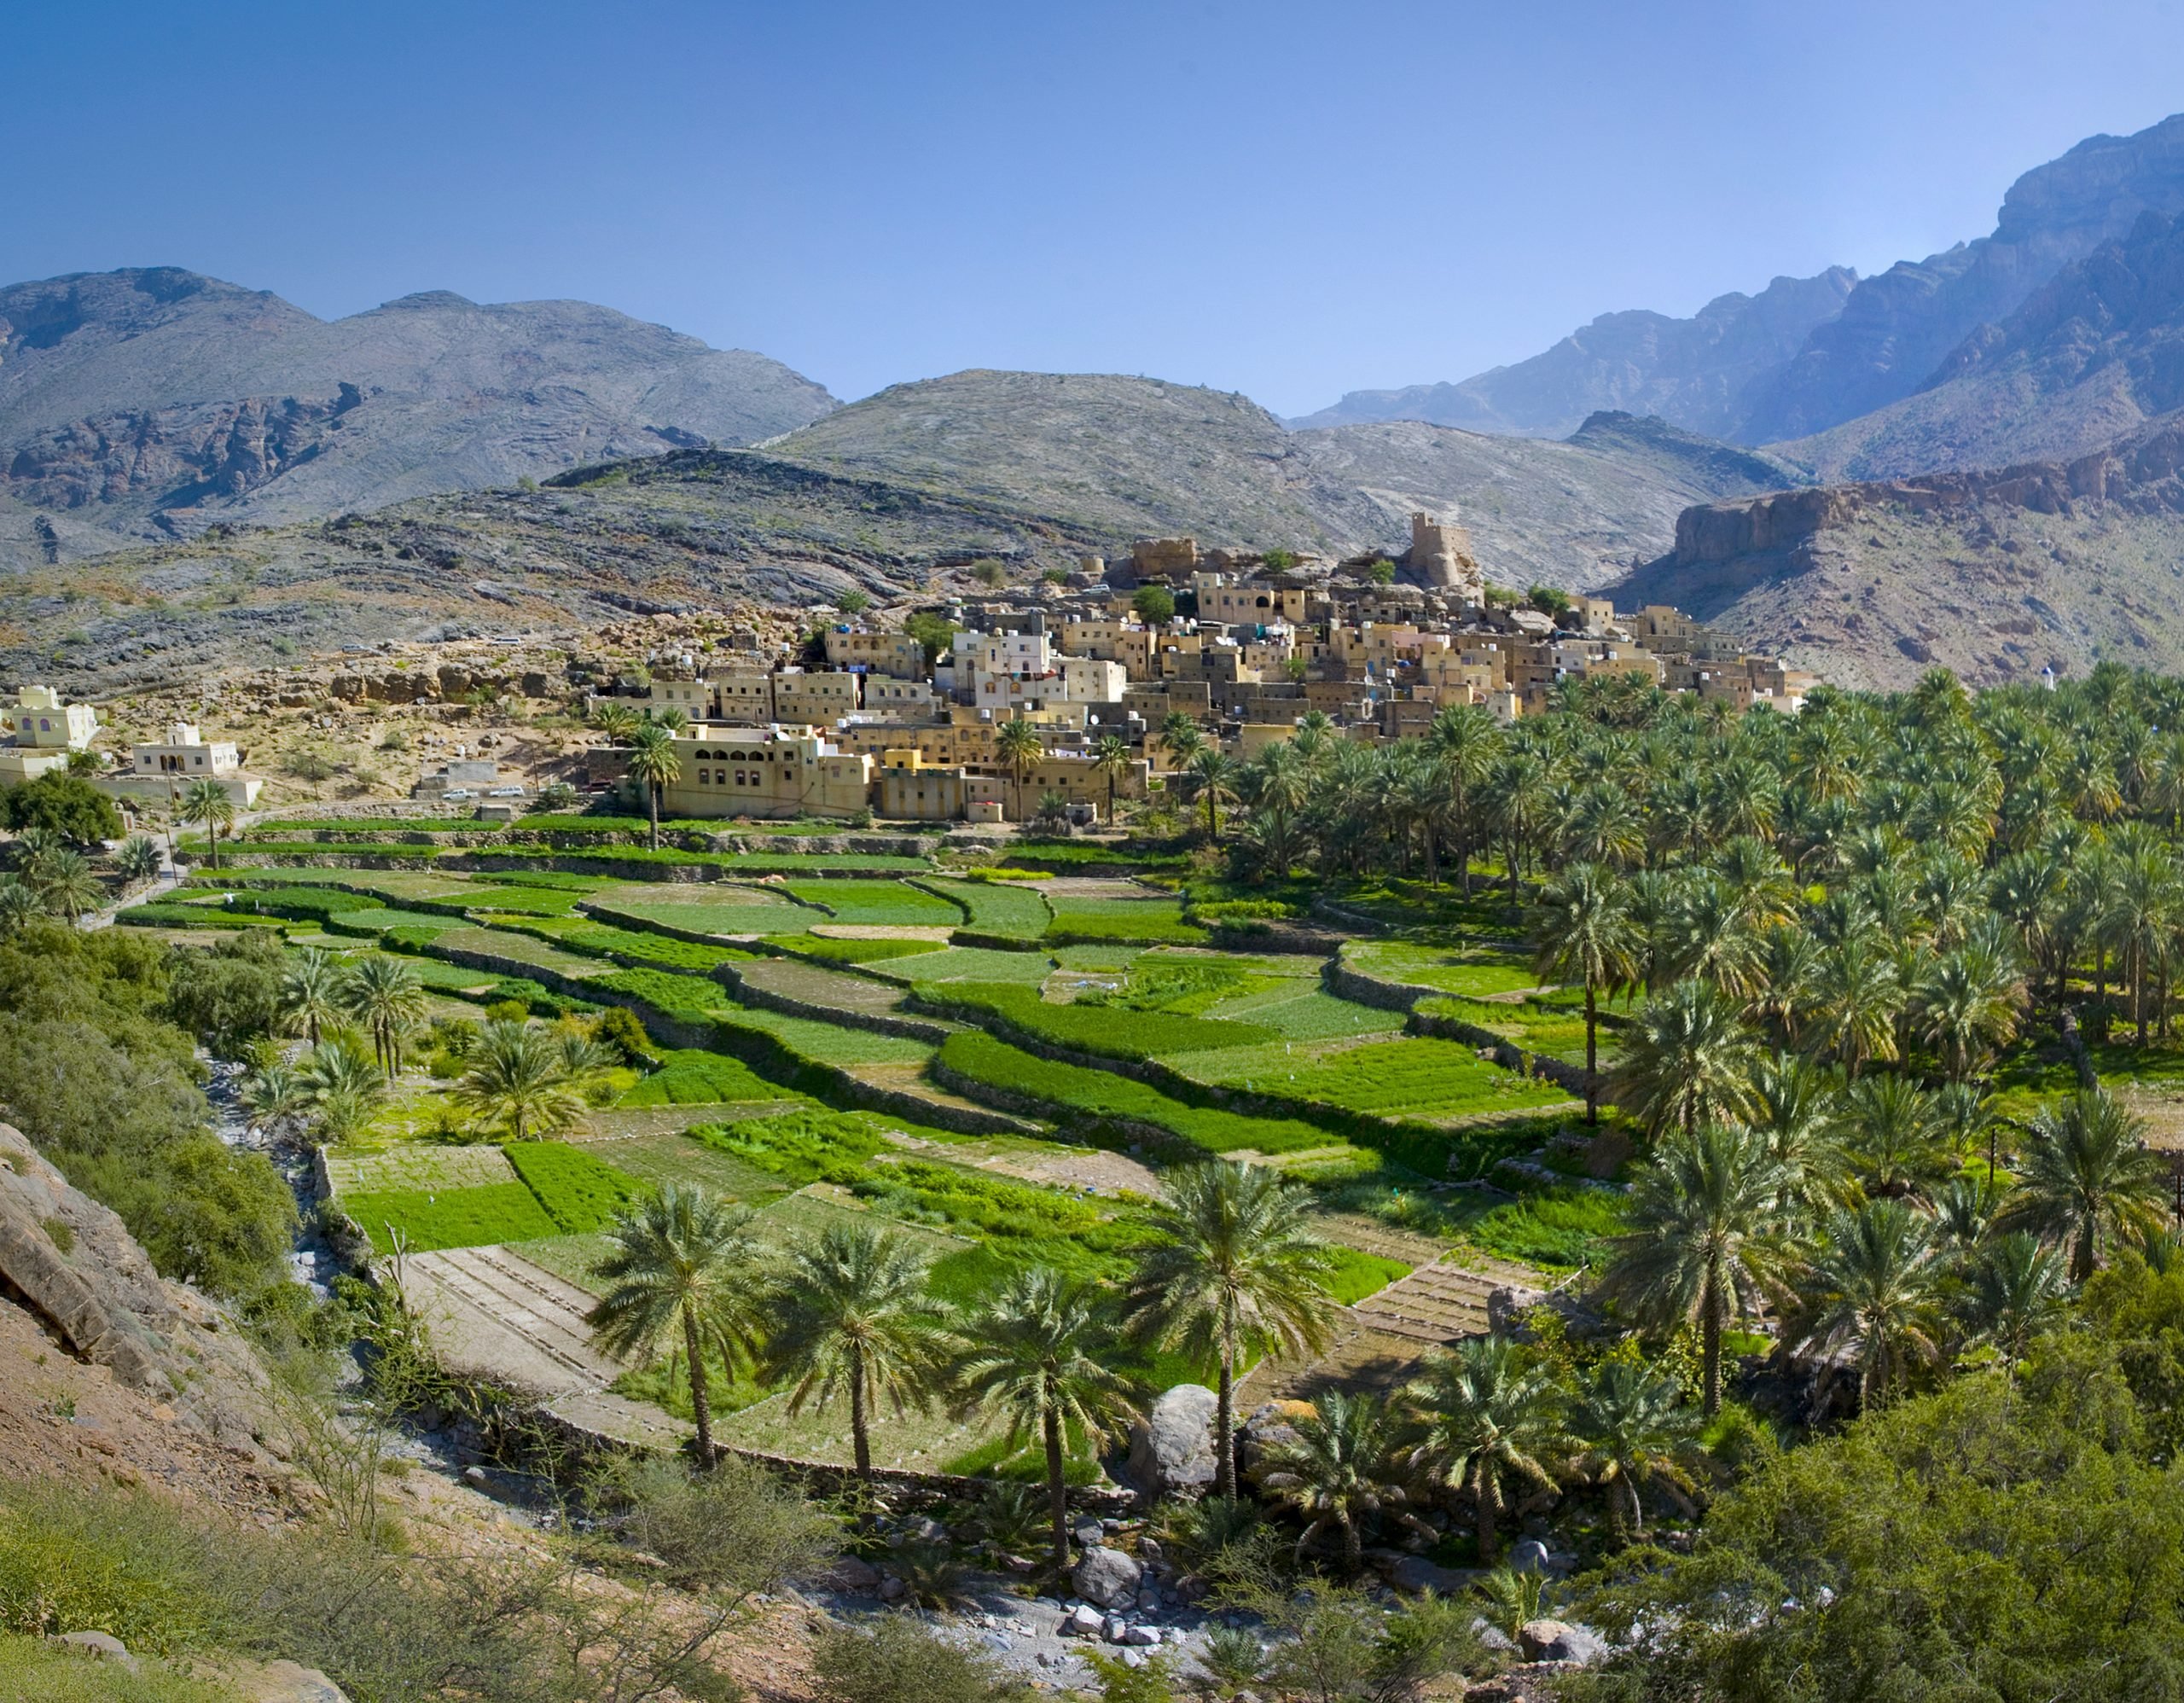 The village in sultanate Oman